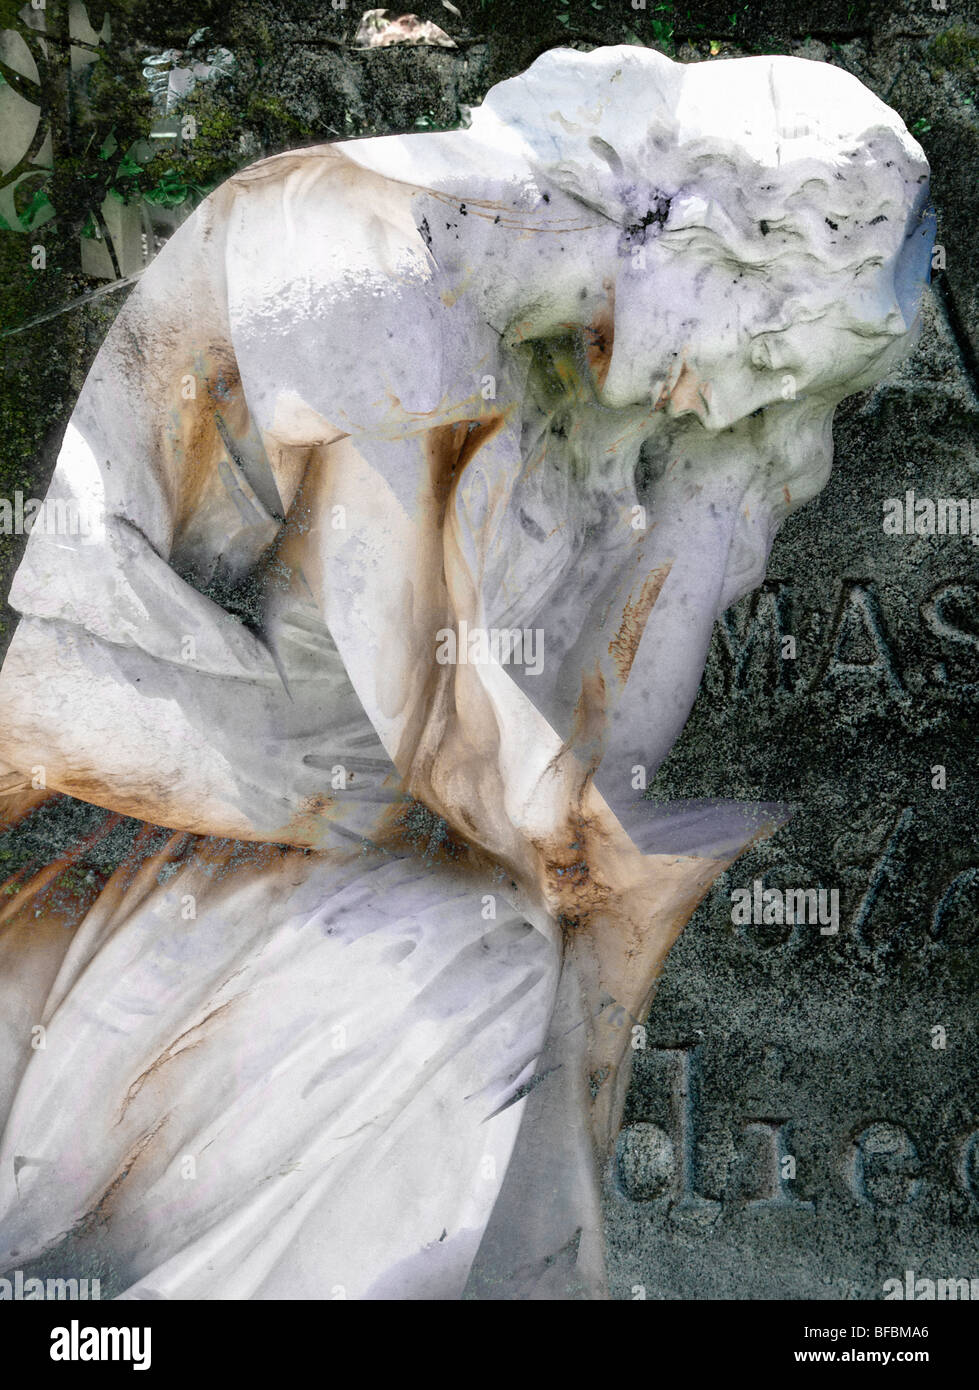 La muerte y el duelo en estatuas de una joven mujer arte fotográfico digital de la colección indigomoods montage USO EDITORIAL Foto de stock